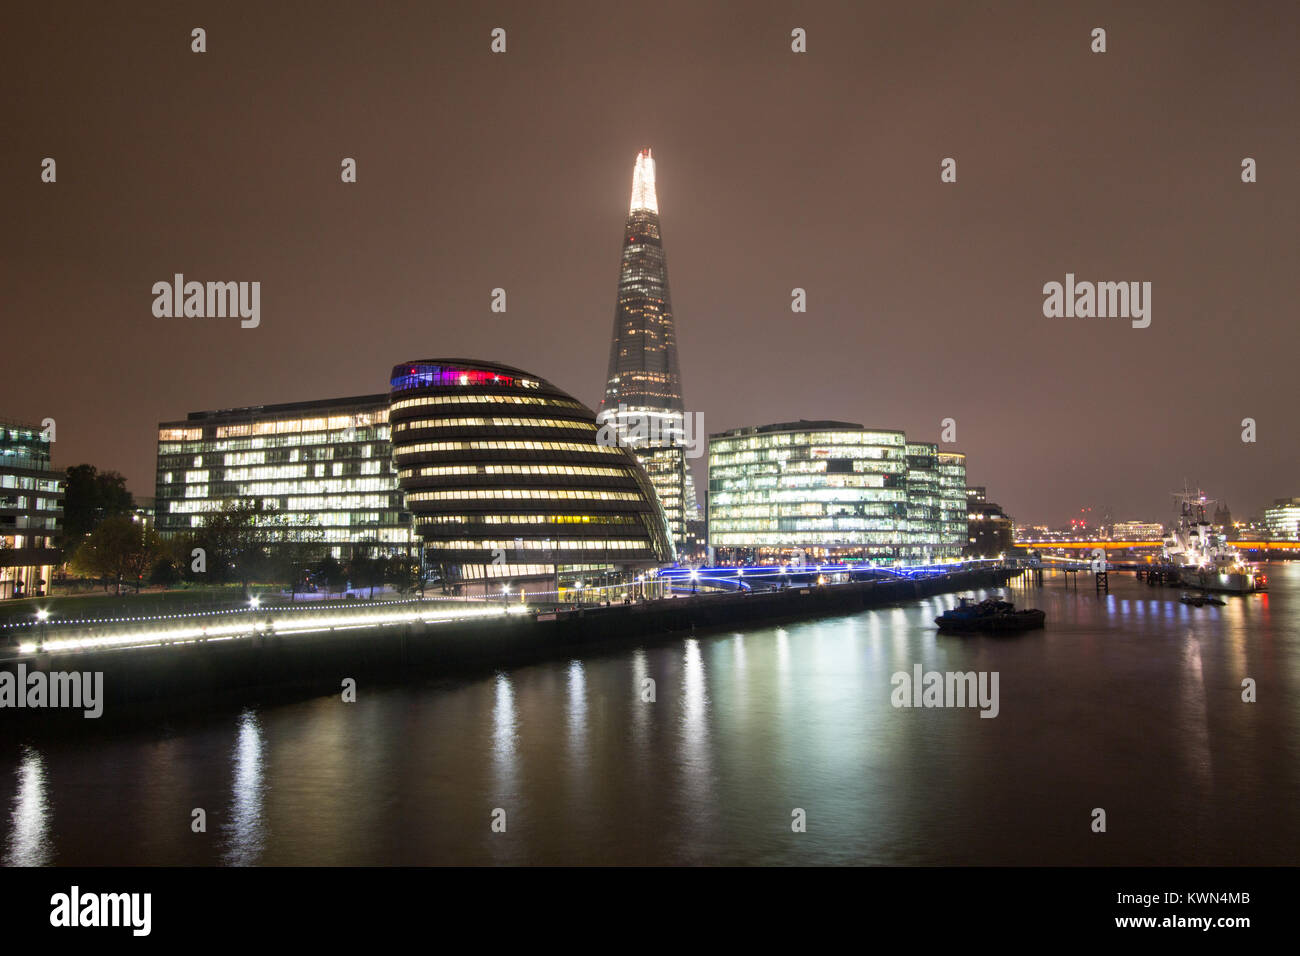 Horizonte de Londres por la noche, incluyendo el Shard y el Ayuntamiento, iluminados a lo largo del río Támesis. Foto de stock